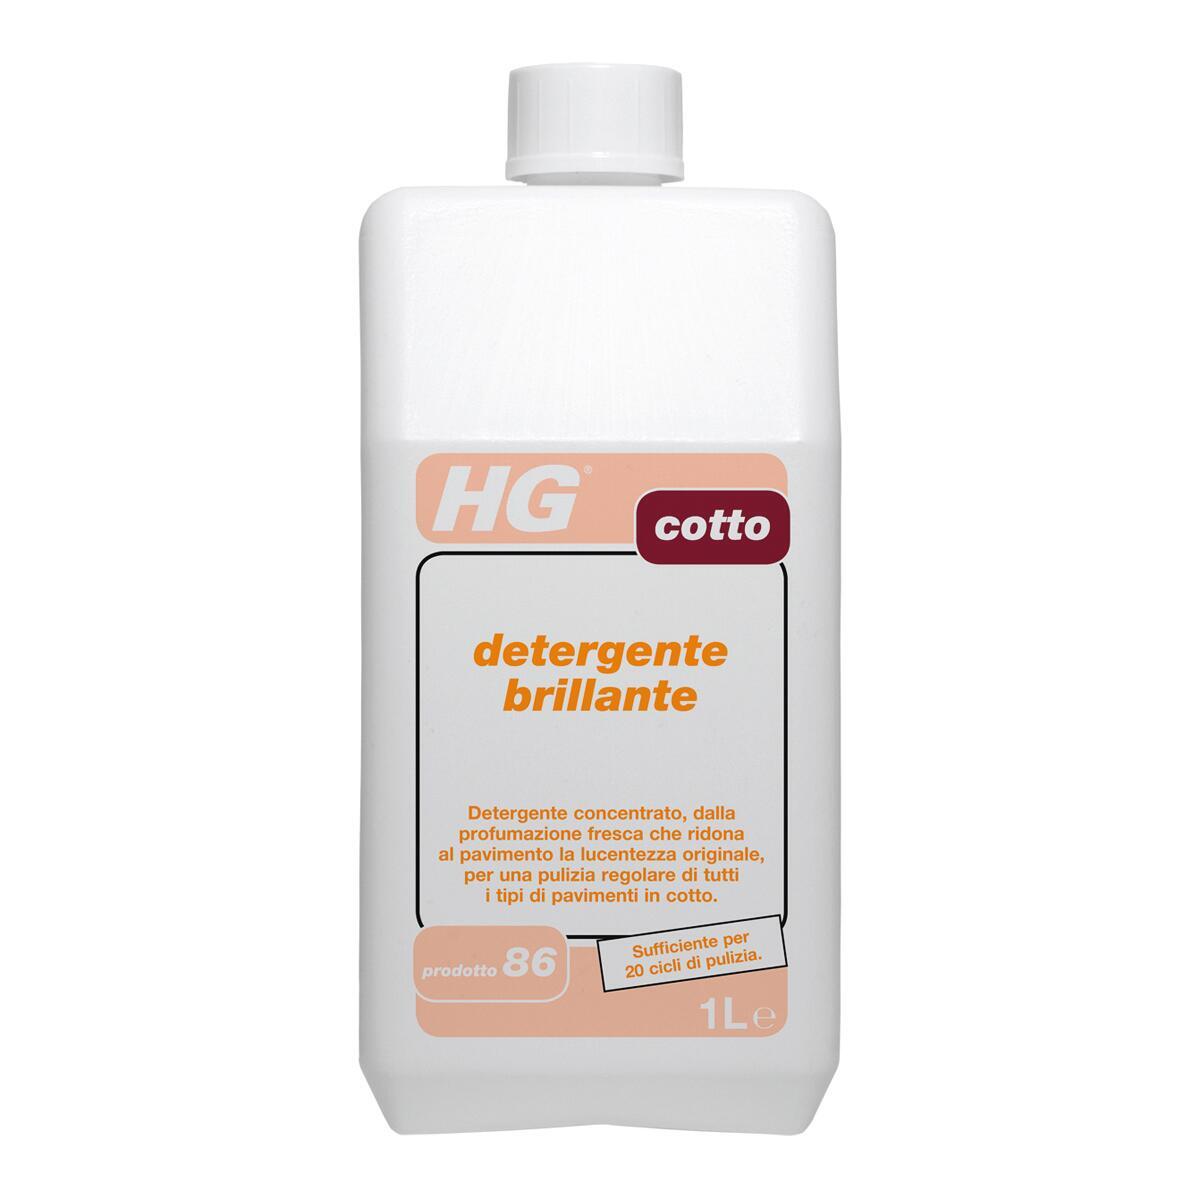 Detergente HG Cotto 1 L - 3